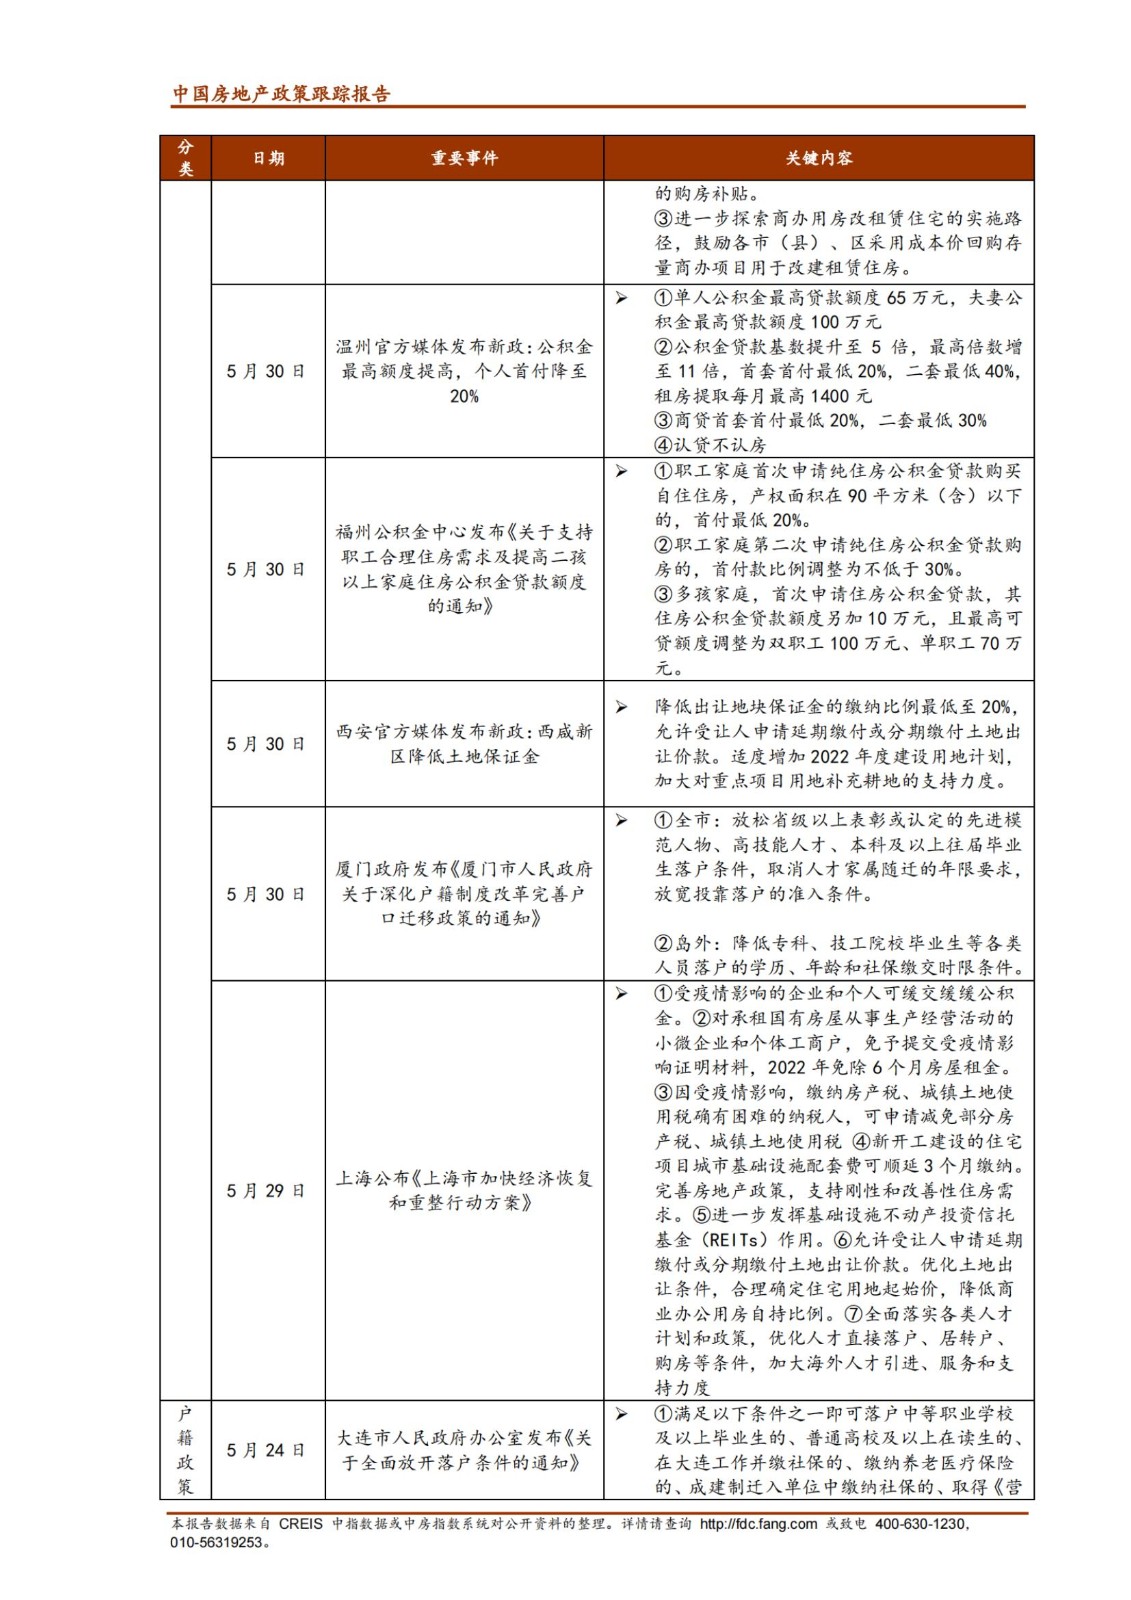 《中指丨中国房地产政策跟踪报告（2022年5月）》_纯图版_20.jpg